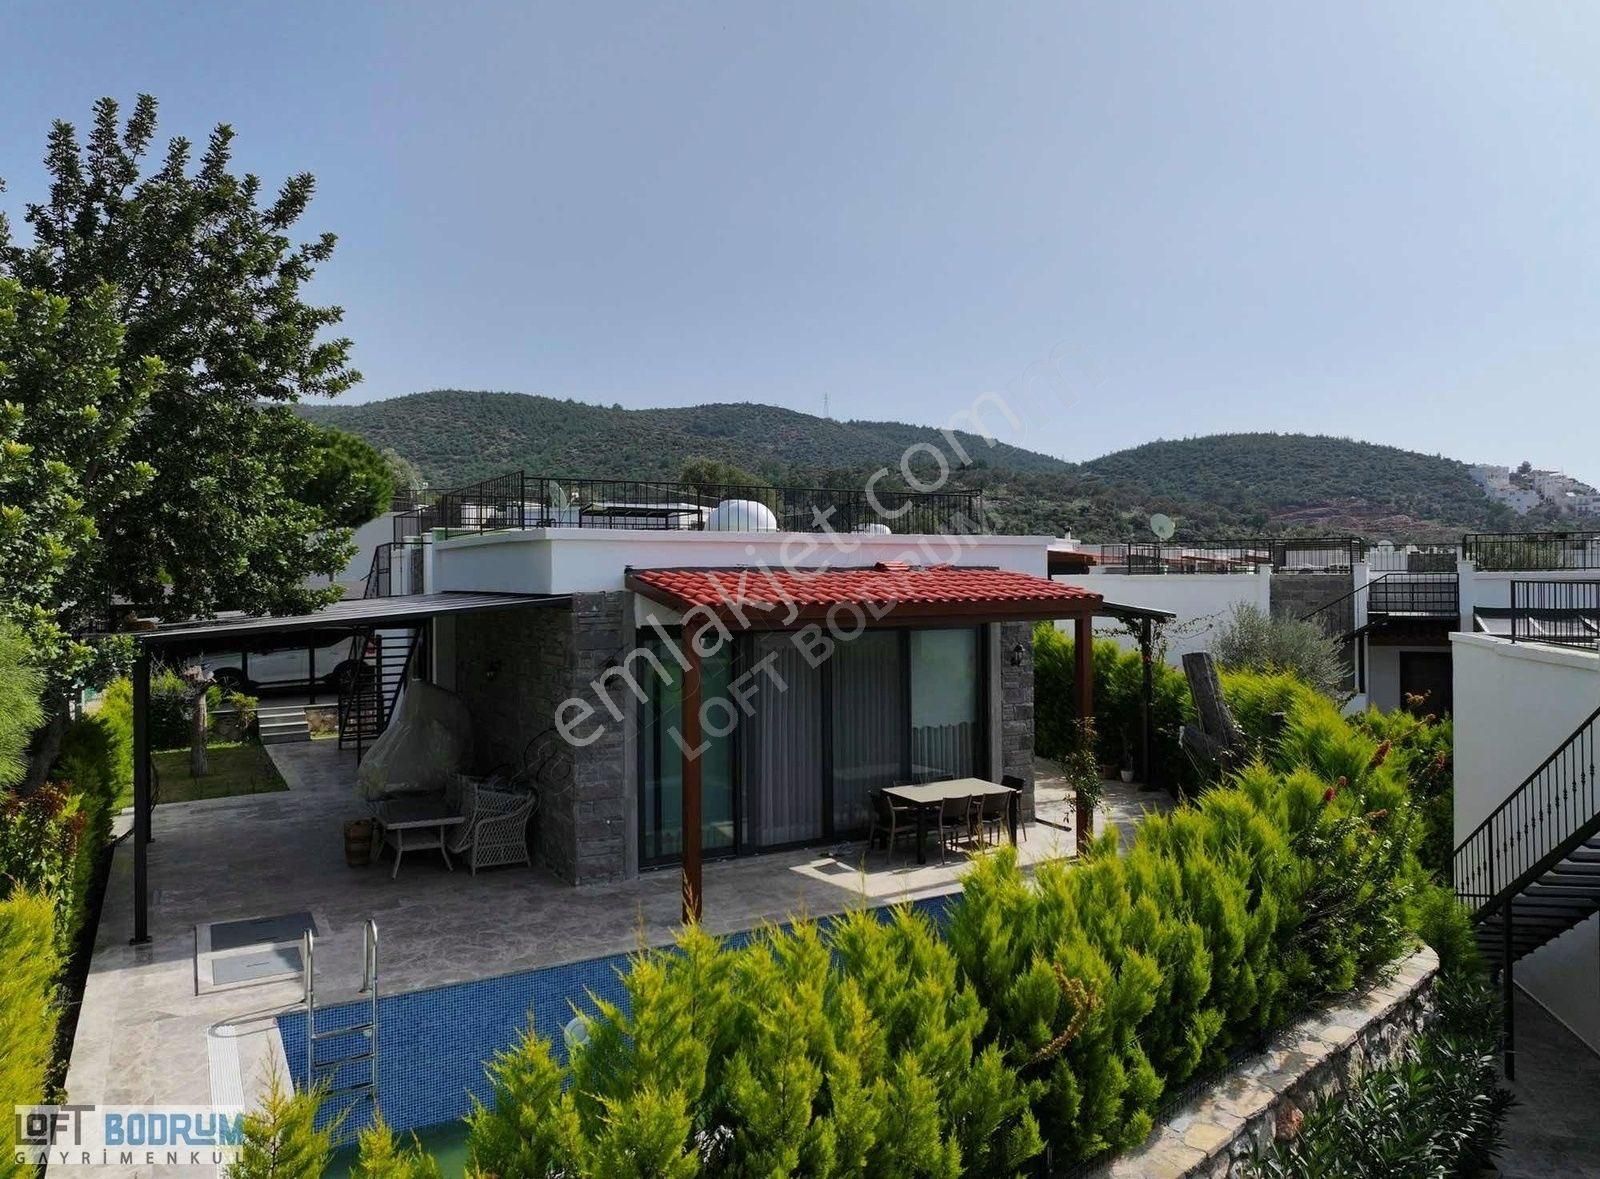 Bodrum Konacık Satılık Villa Konacık'ta Satılık 3+1 Tek Katlı Müstakil Villa